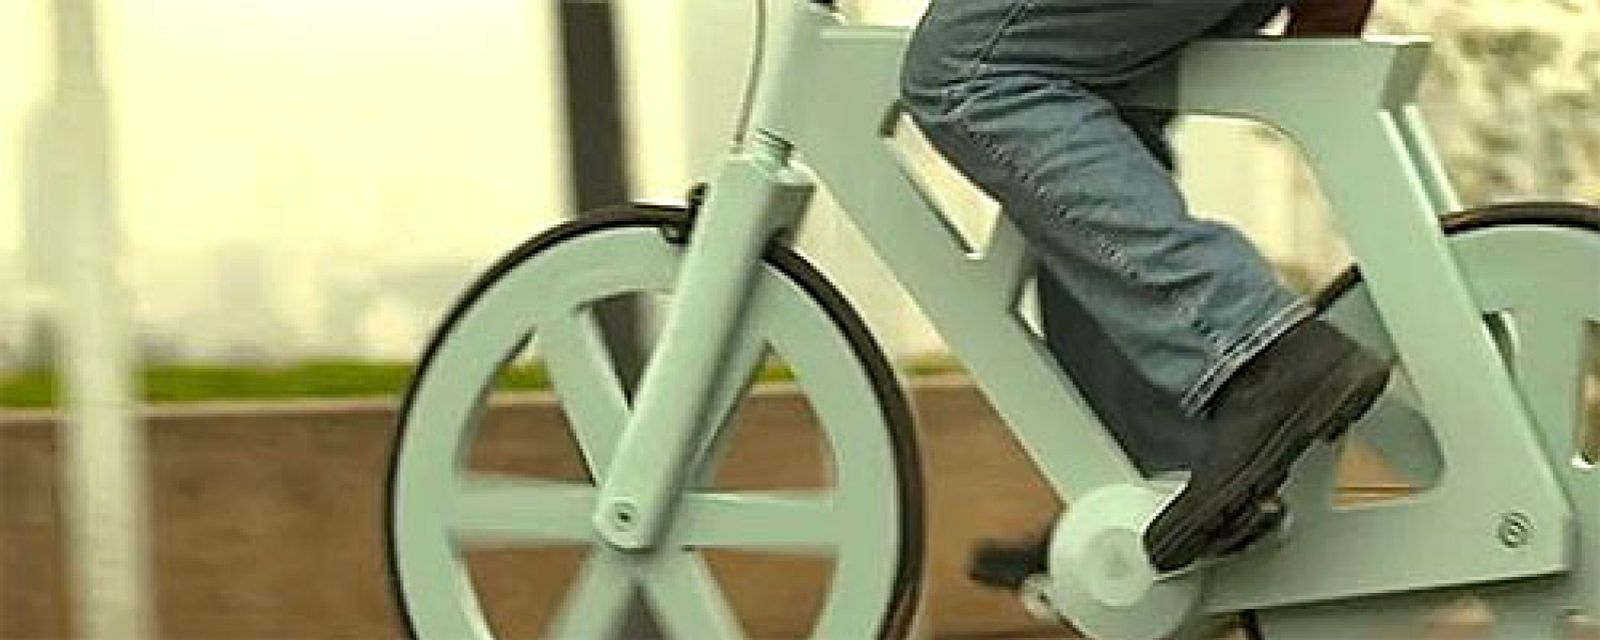 Foto: ¿Puede una bicicleta de cartón revolucionar el mercado?